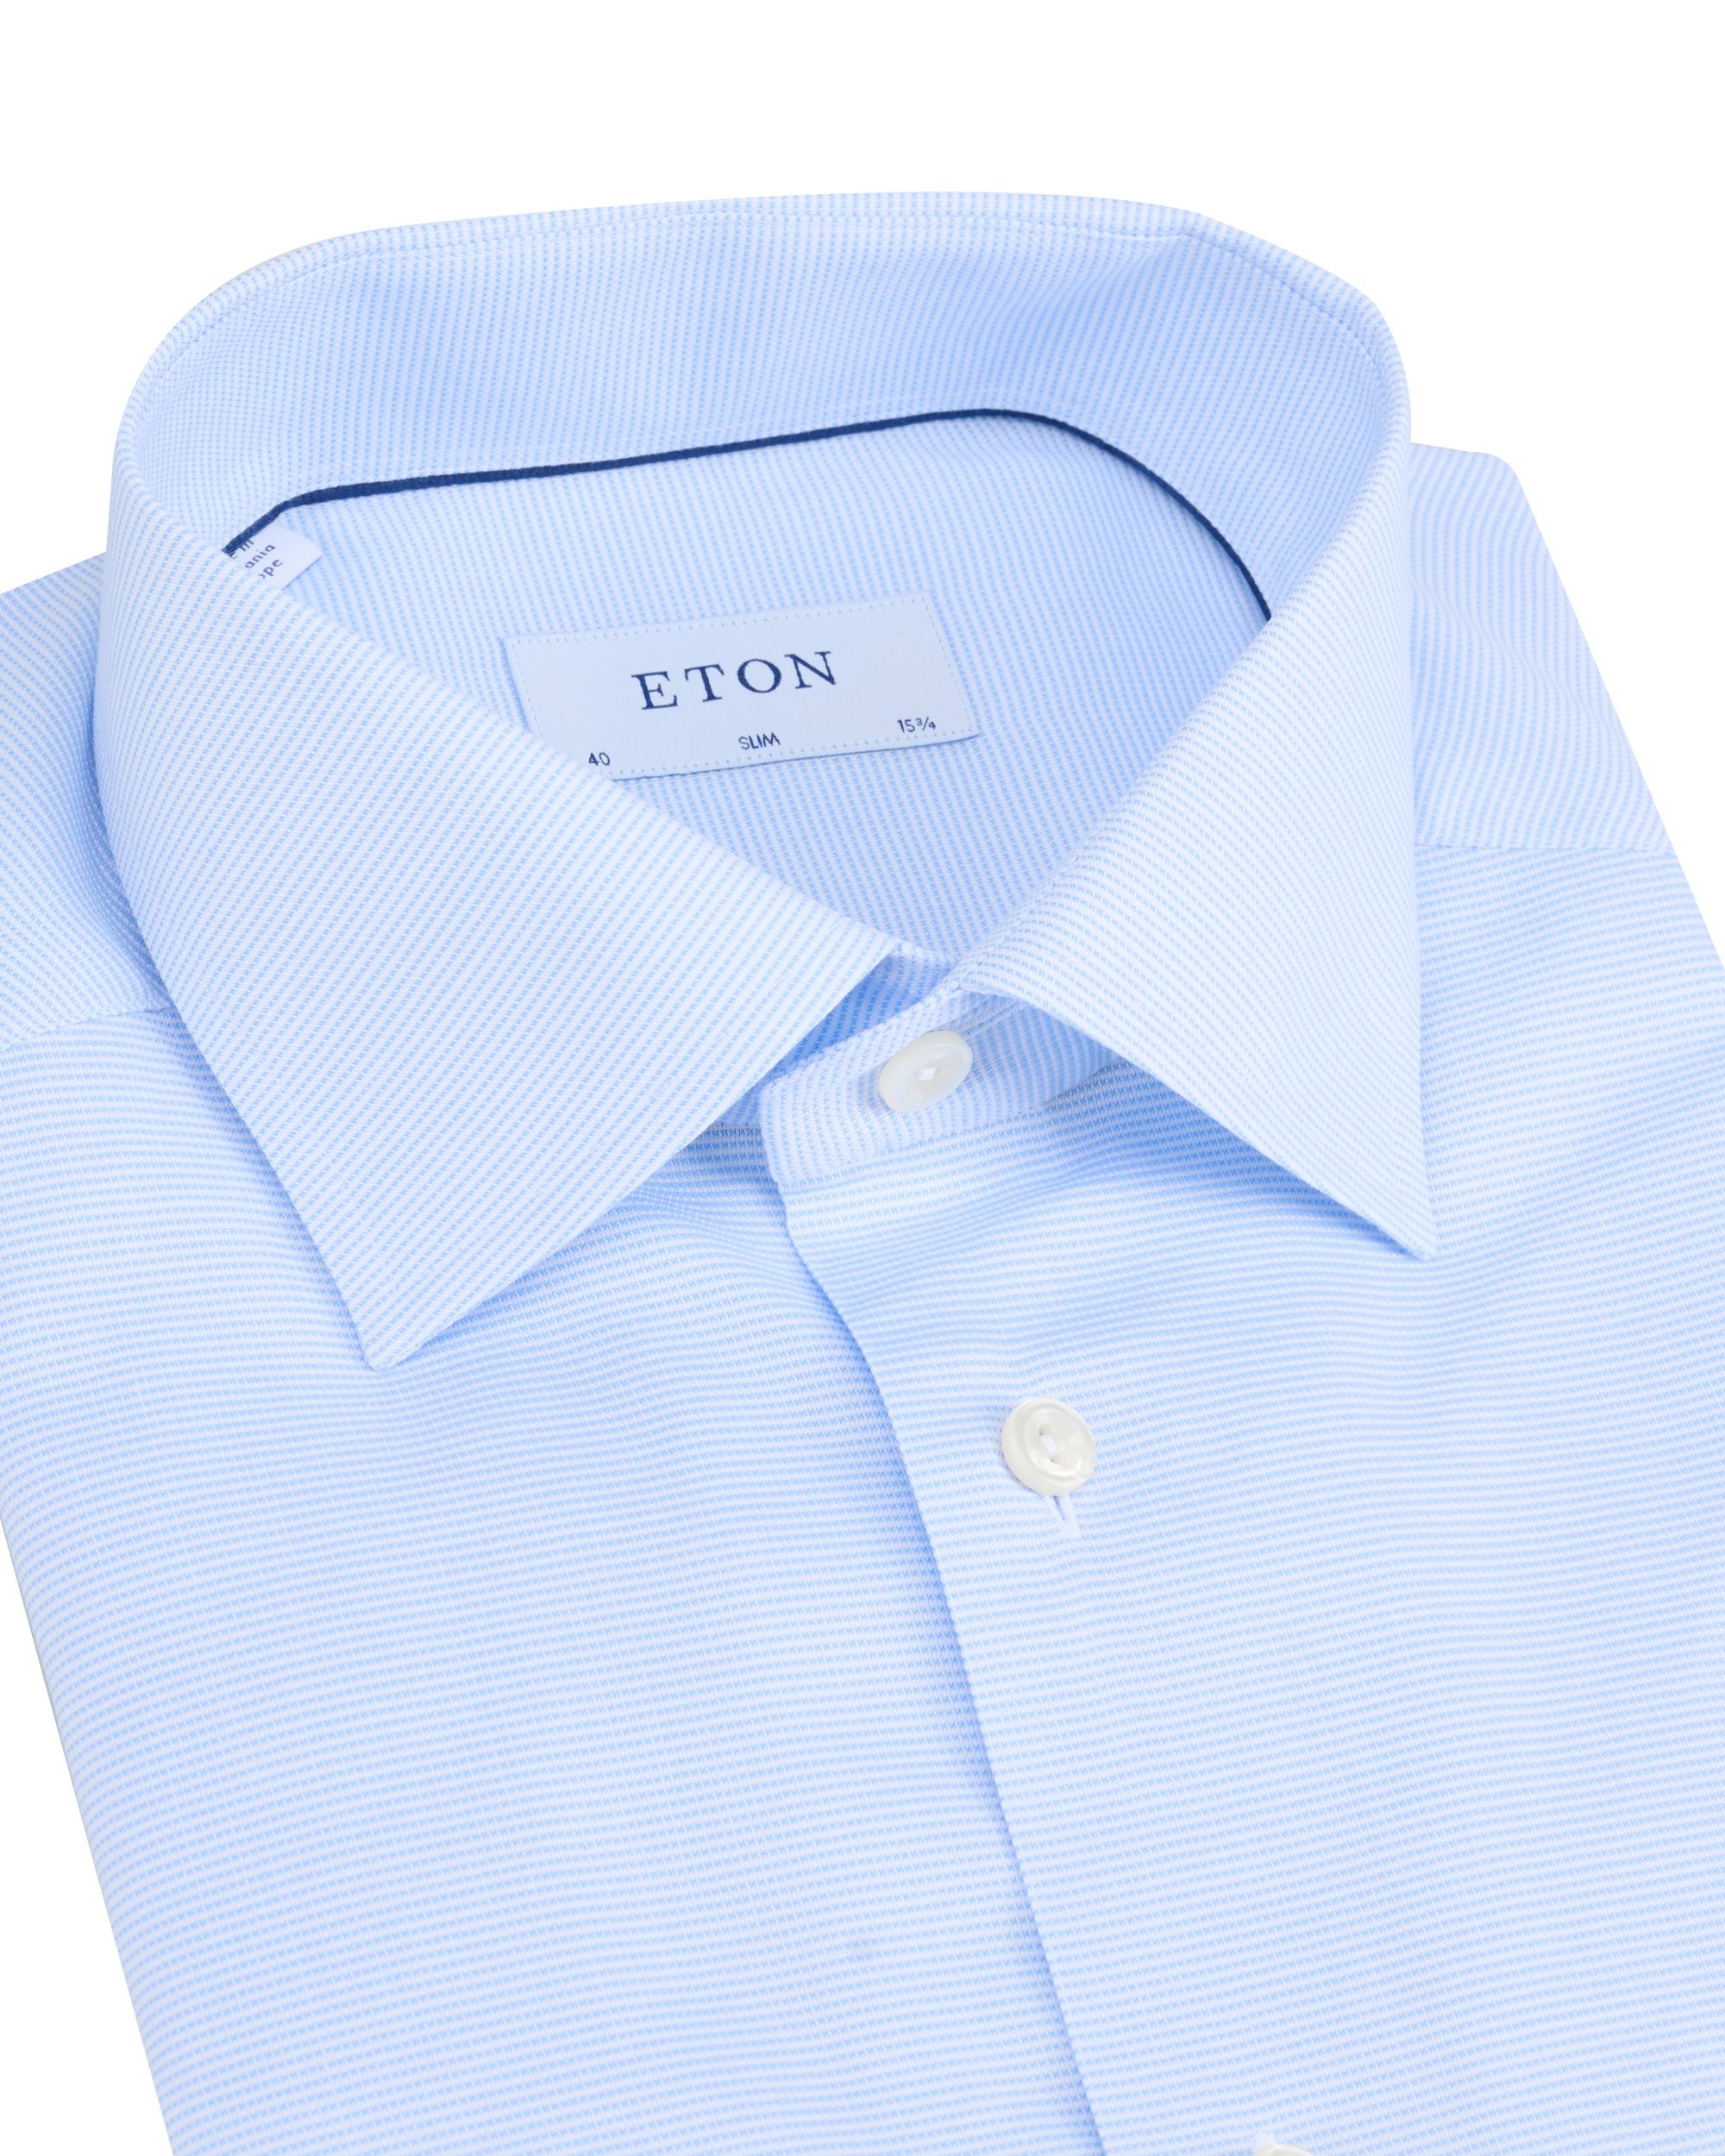 ETON Overhemd LM Blauw 091978-001-41